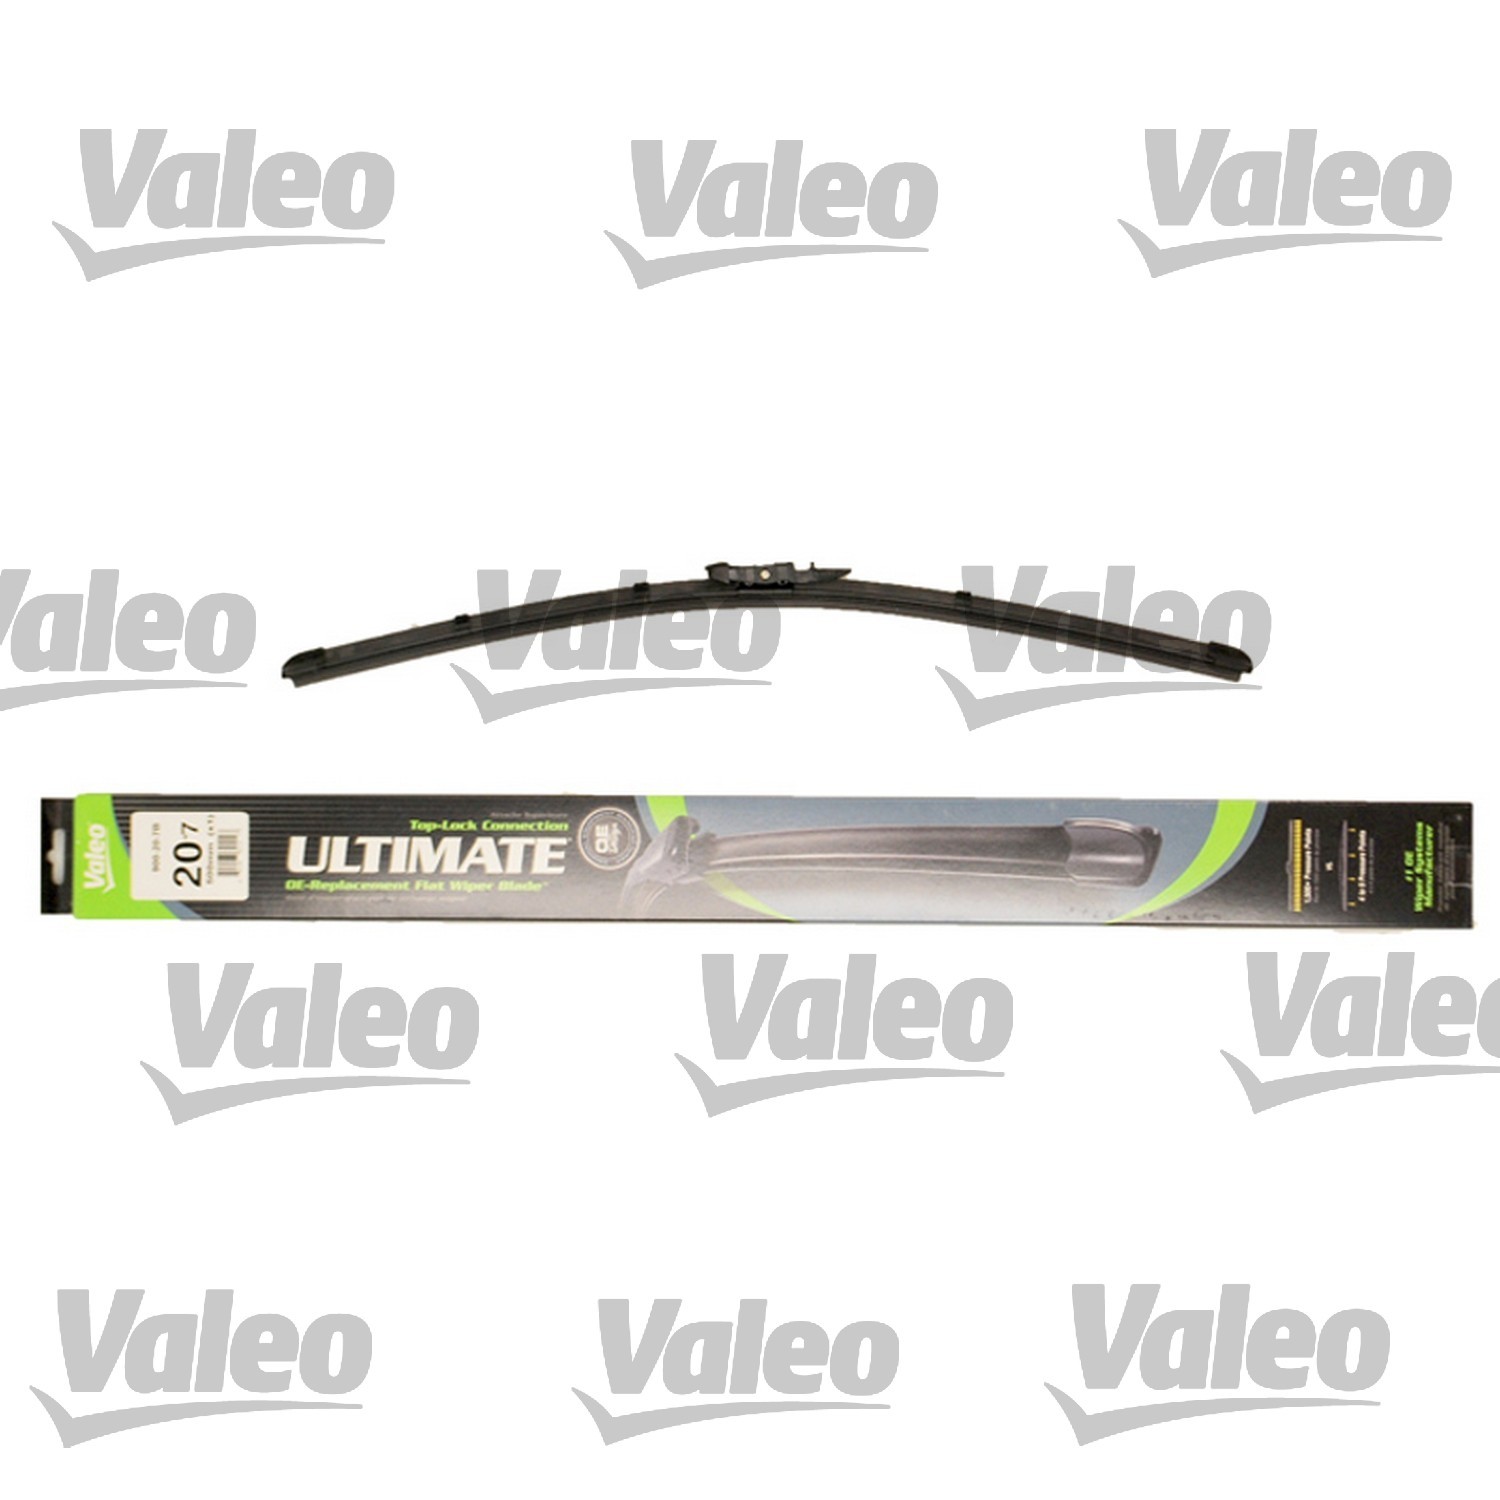 VALEO - Ultimate Wiper Blade Refill - VEO 900-20-7B